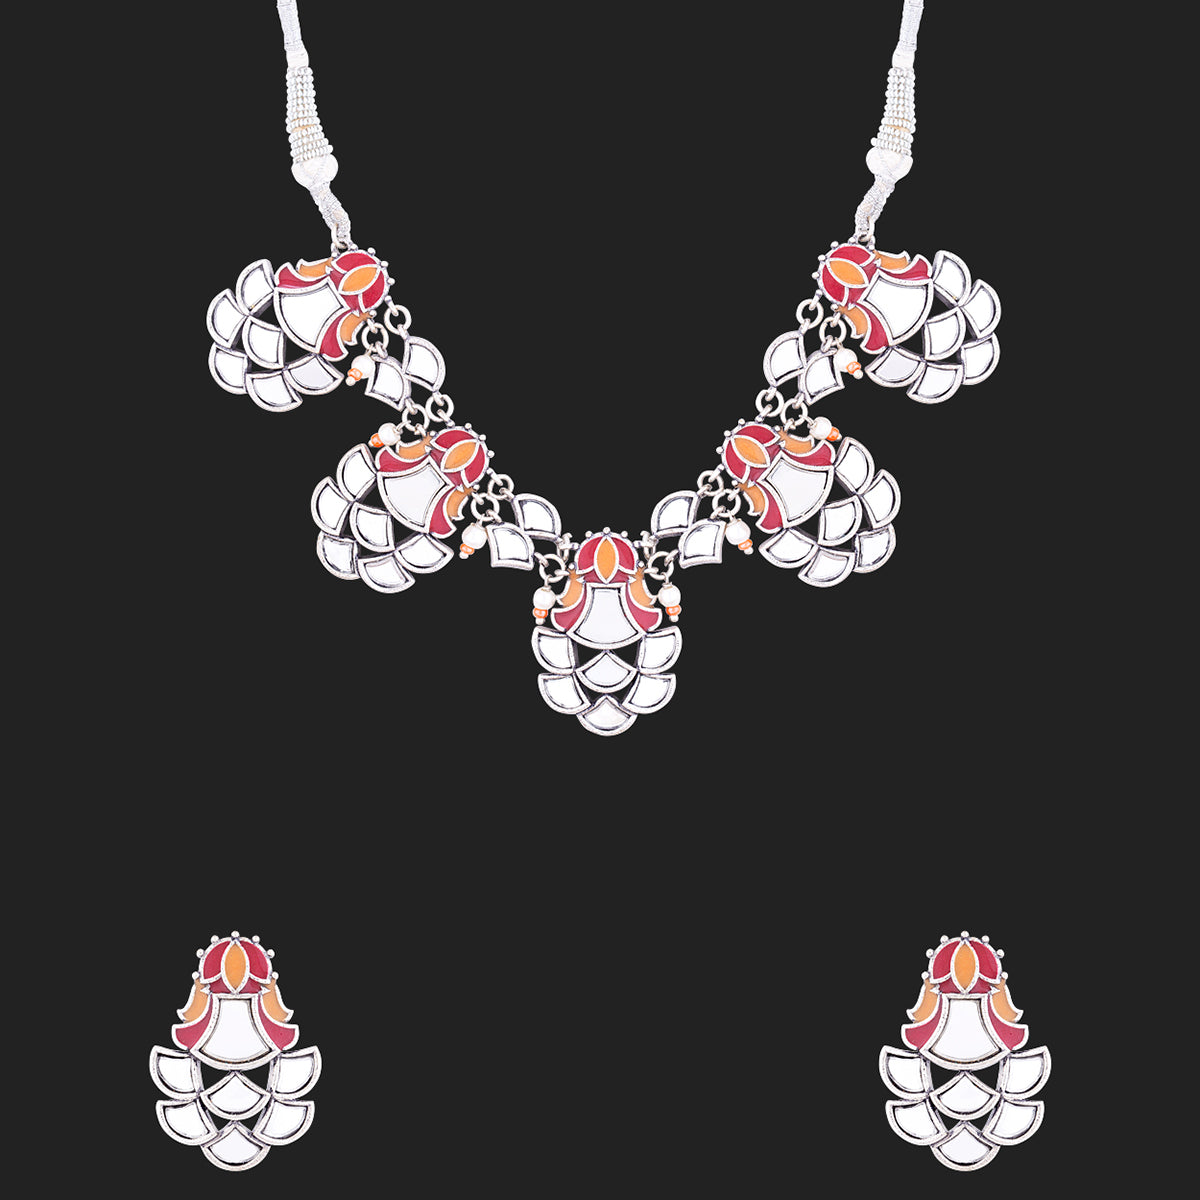 Thikri Mirrored Choker Necklace Set